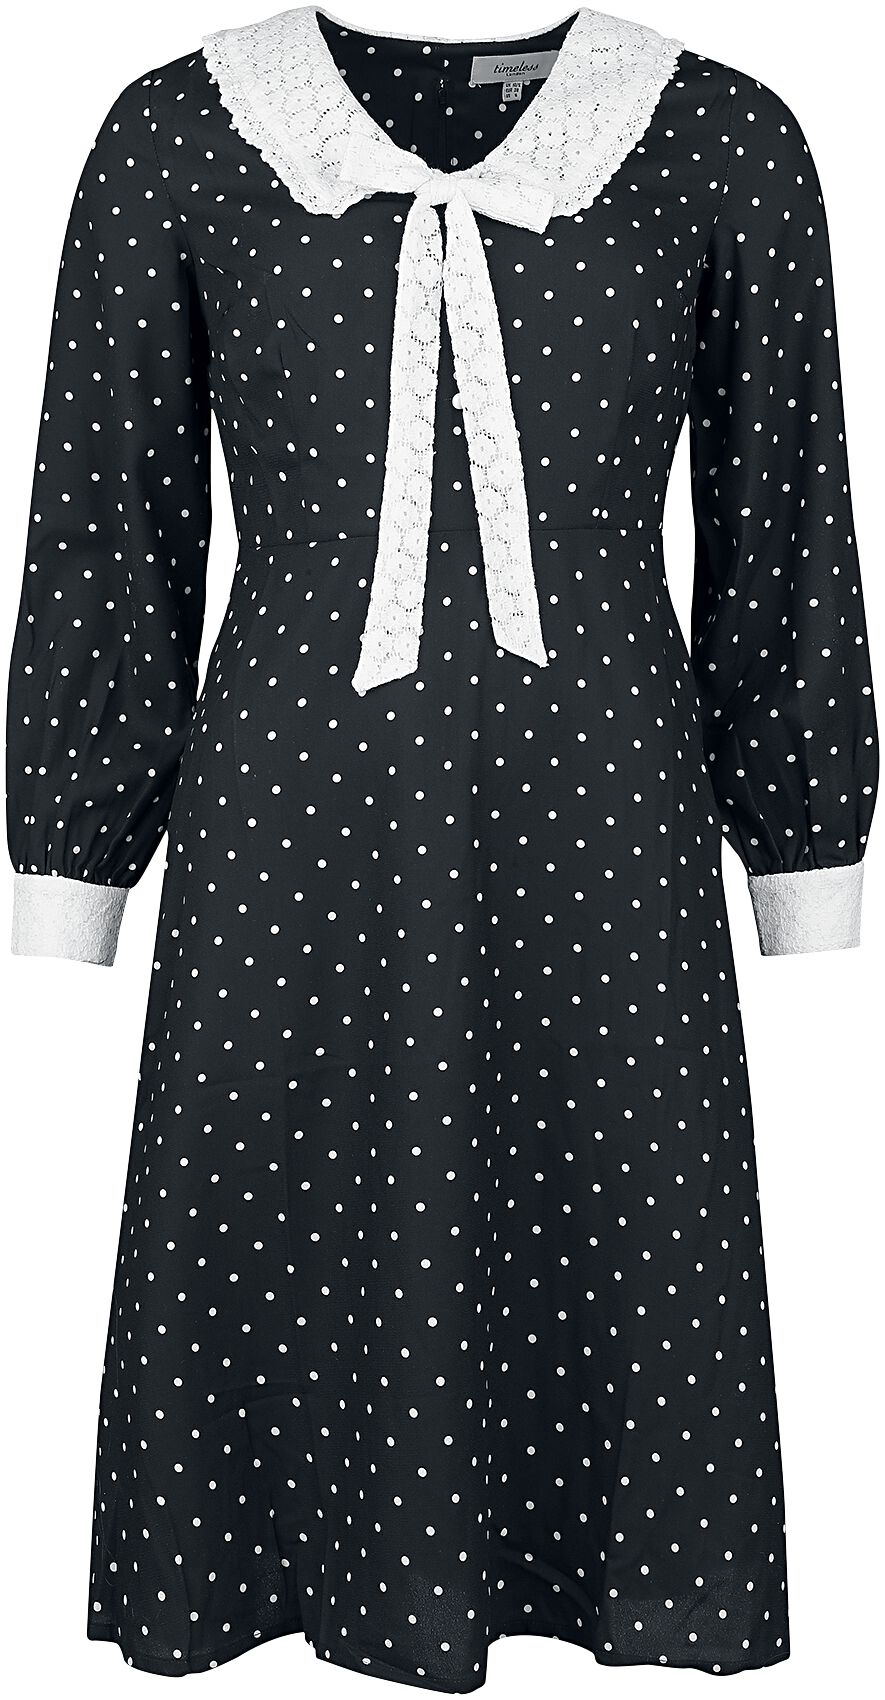 Timeless London - Rockabilly Kleid knielang - Bow Front Dress - XS bis L - für Damen - Größe XS - schwarz/weiß